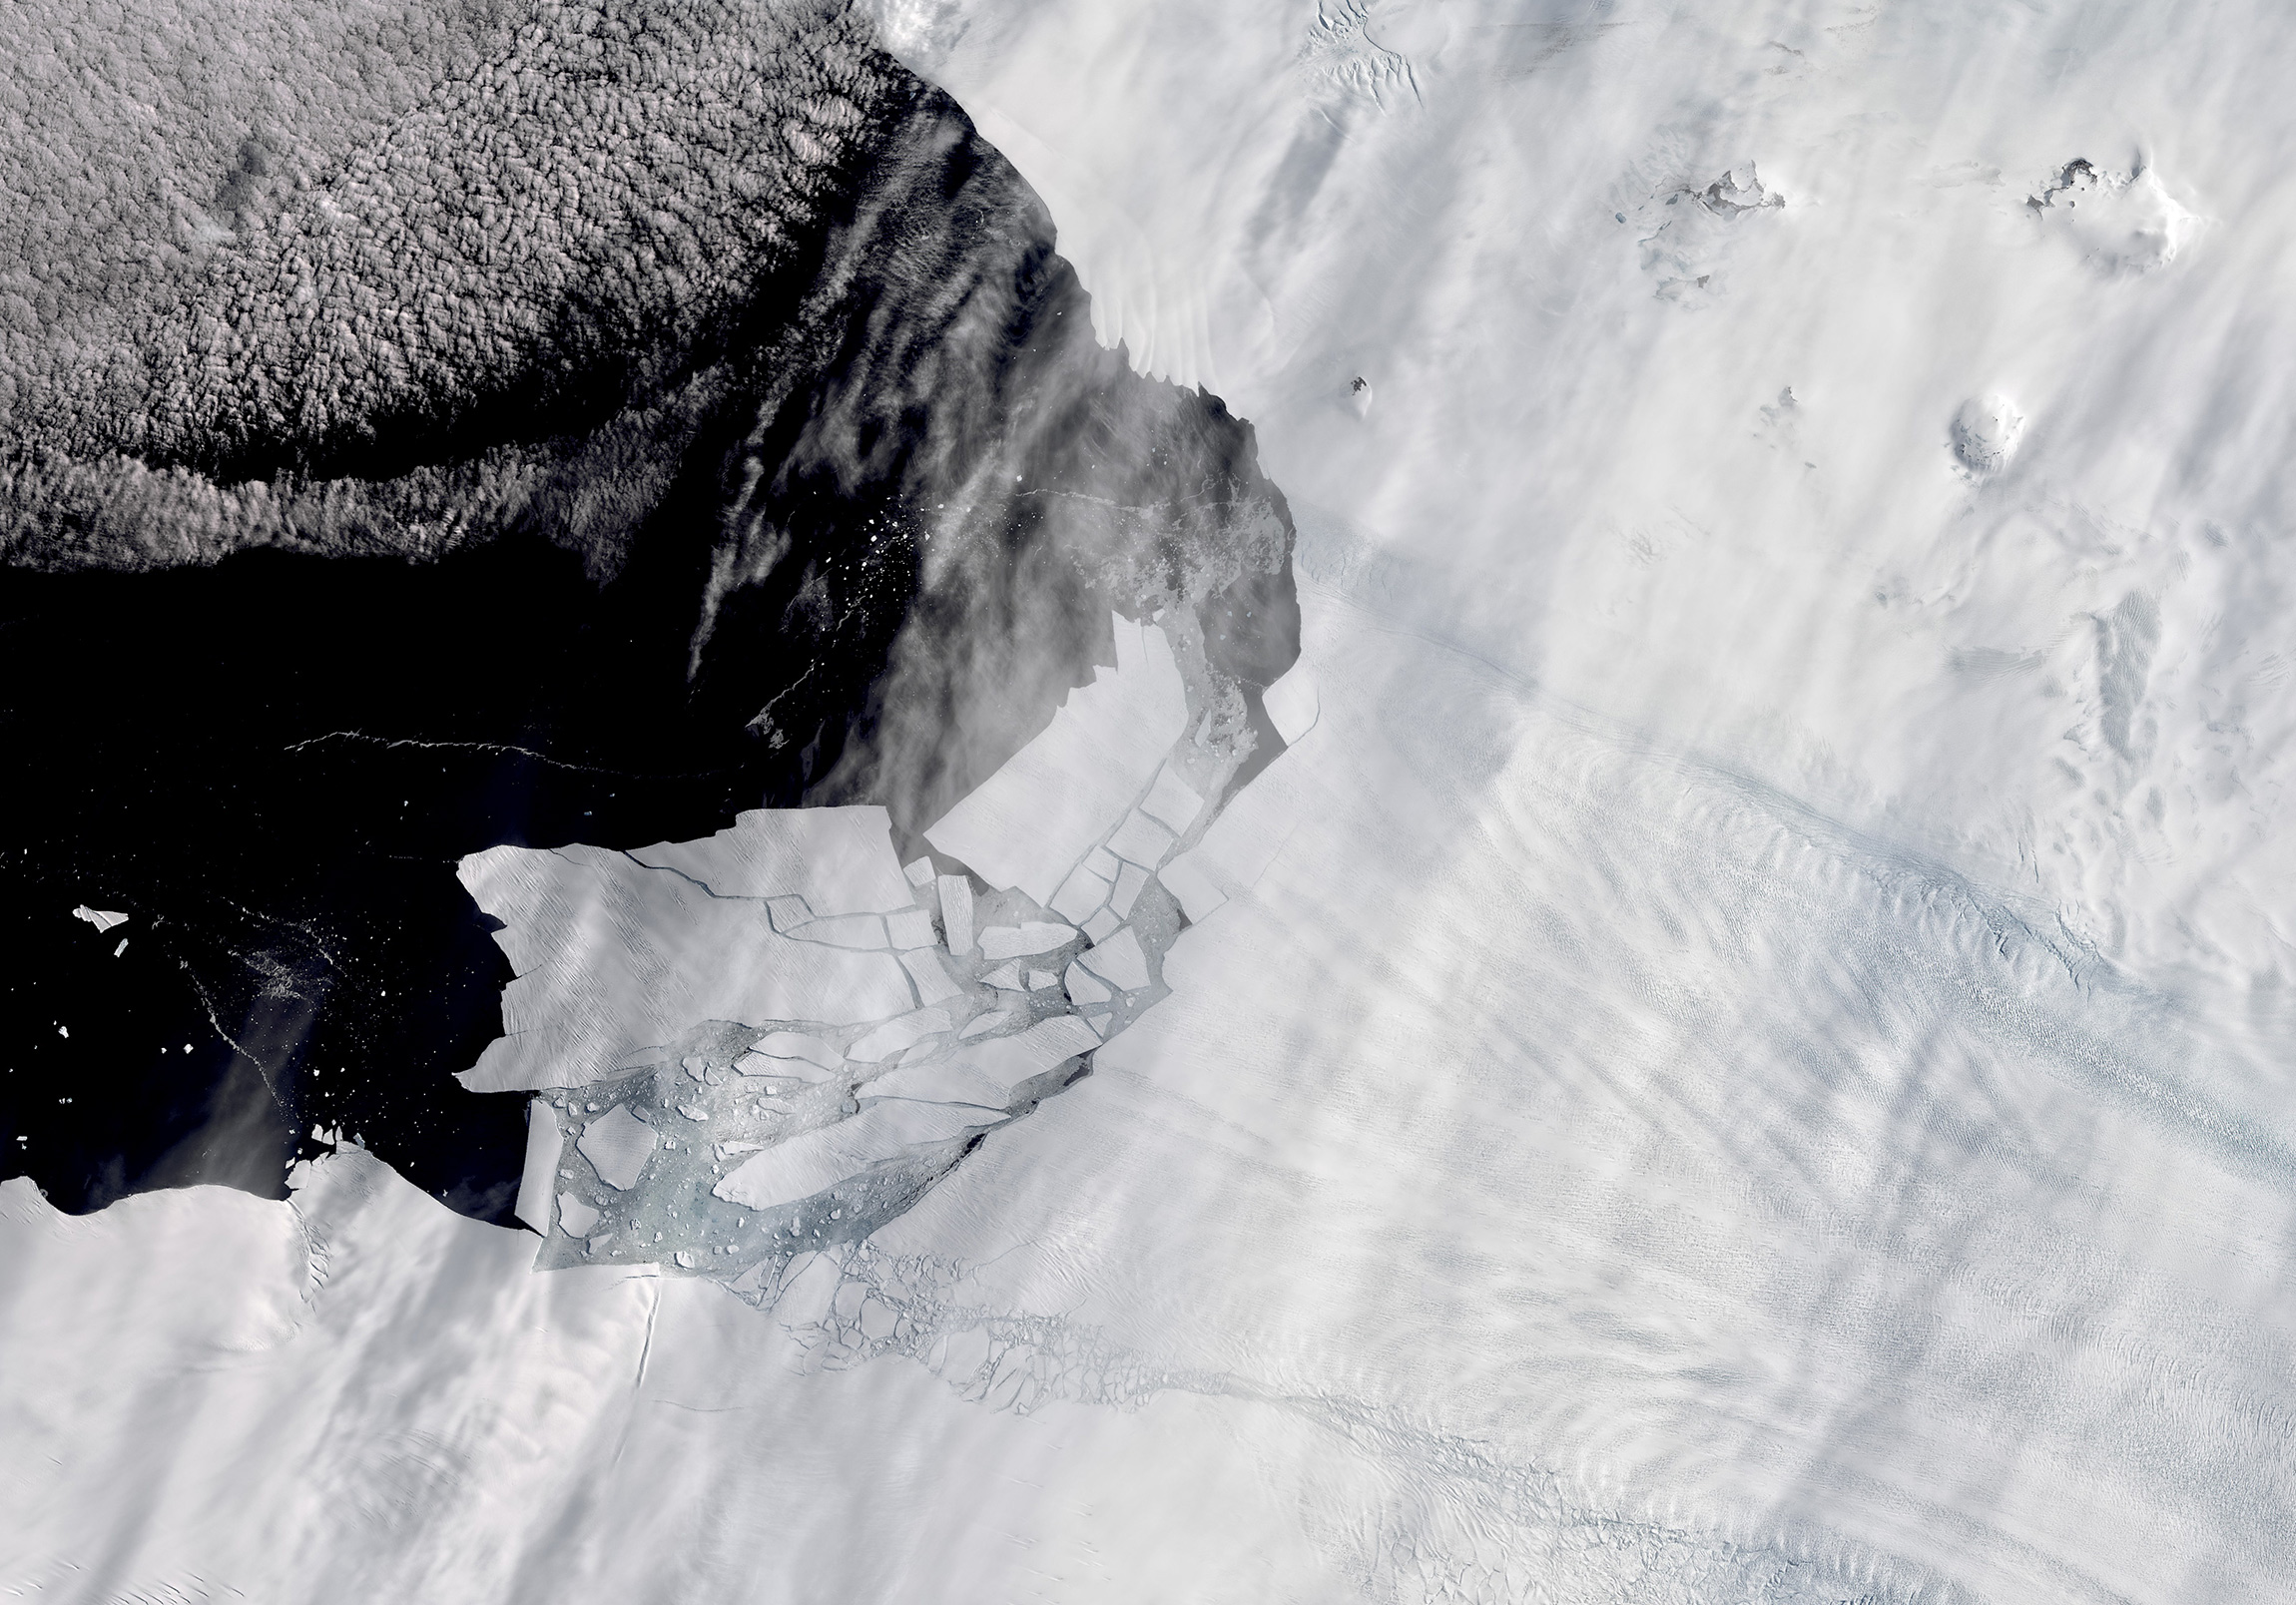 11 февраля. Отделение айсбергов от ледника Пайн-Айленд в Антарктиде. Самый большой айсберг примерно в два раза больше Вашингтона (округ Колумбия)